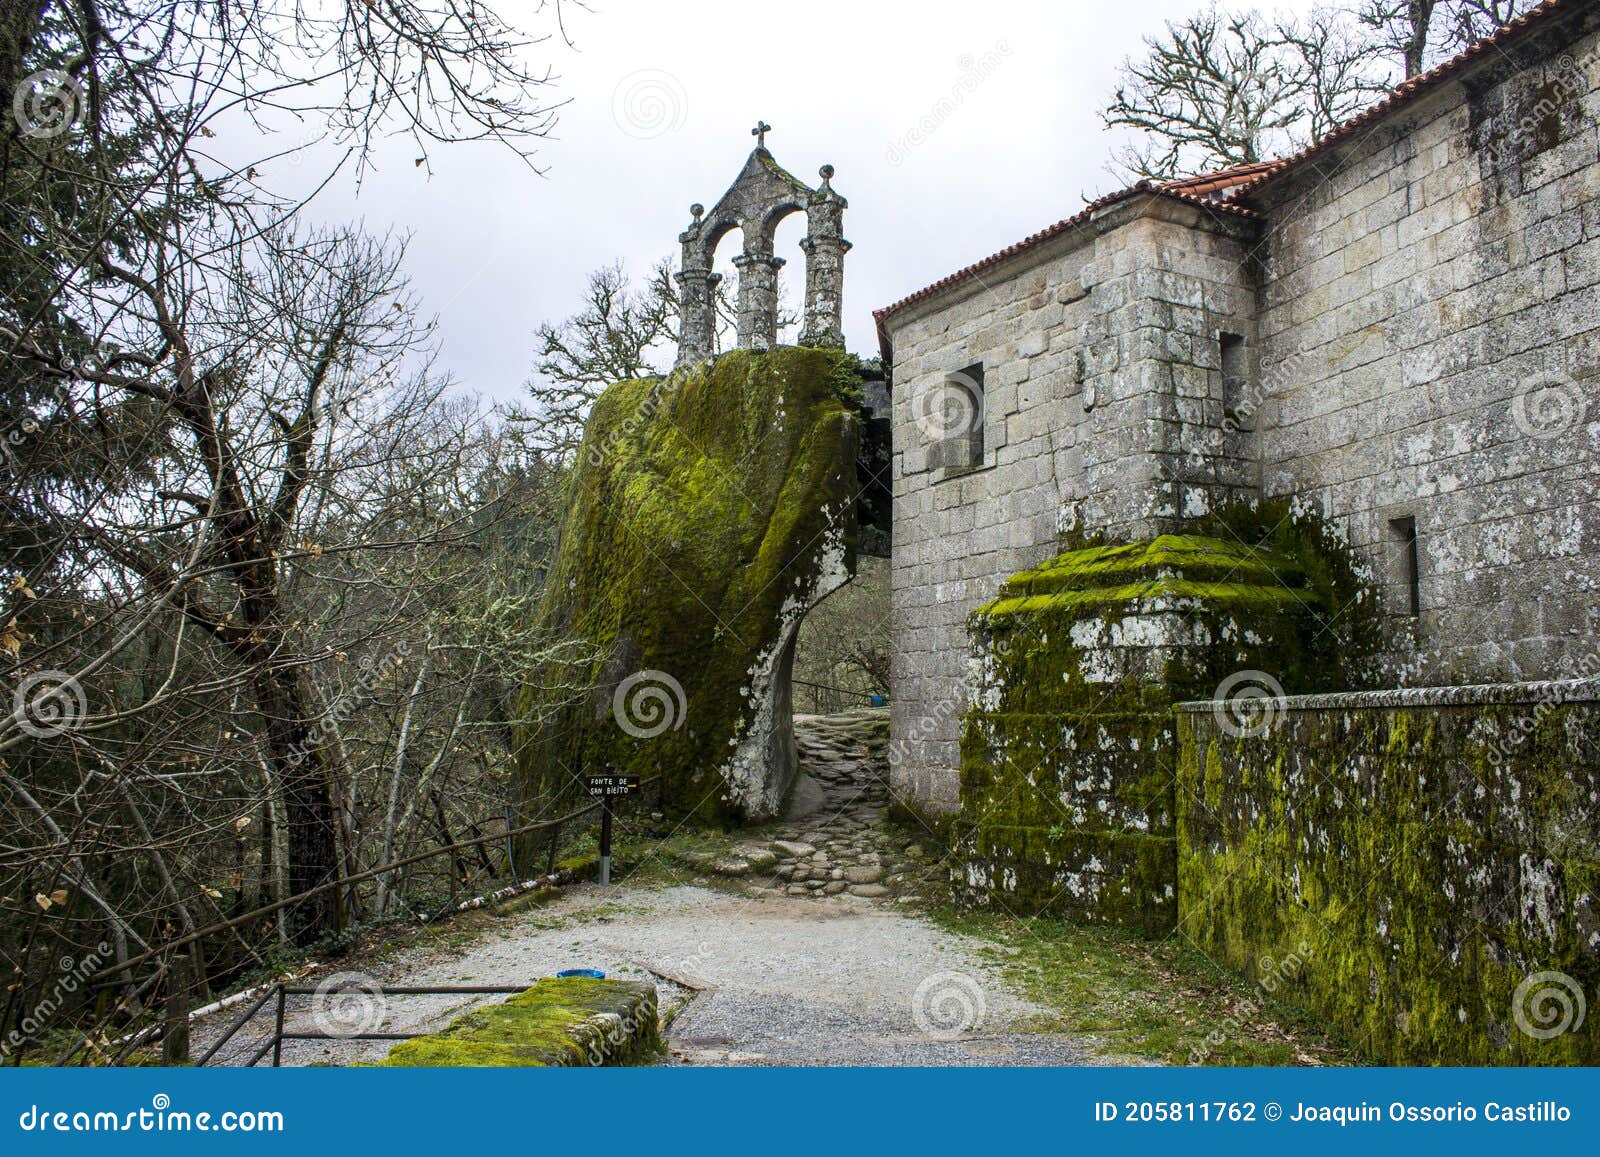 monastery of san pedro de rocas